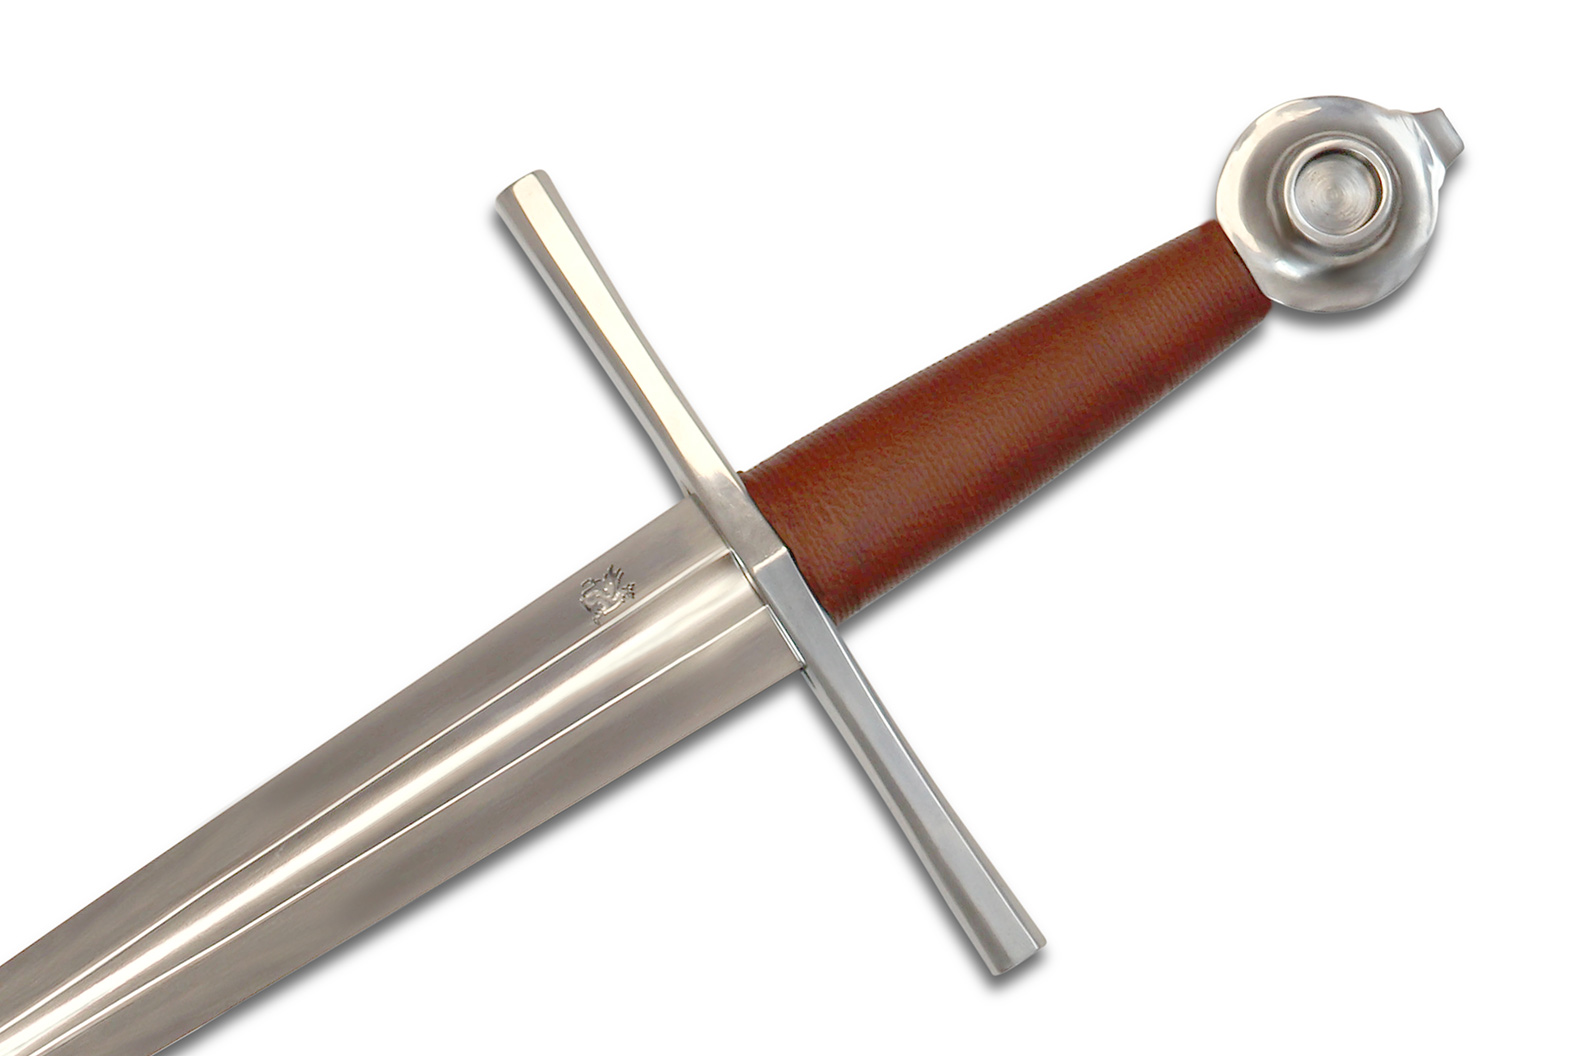 The Duke Medieval Dagger